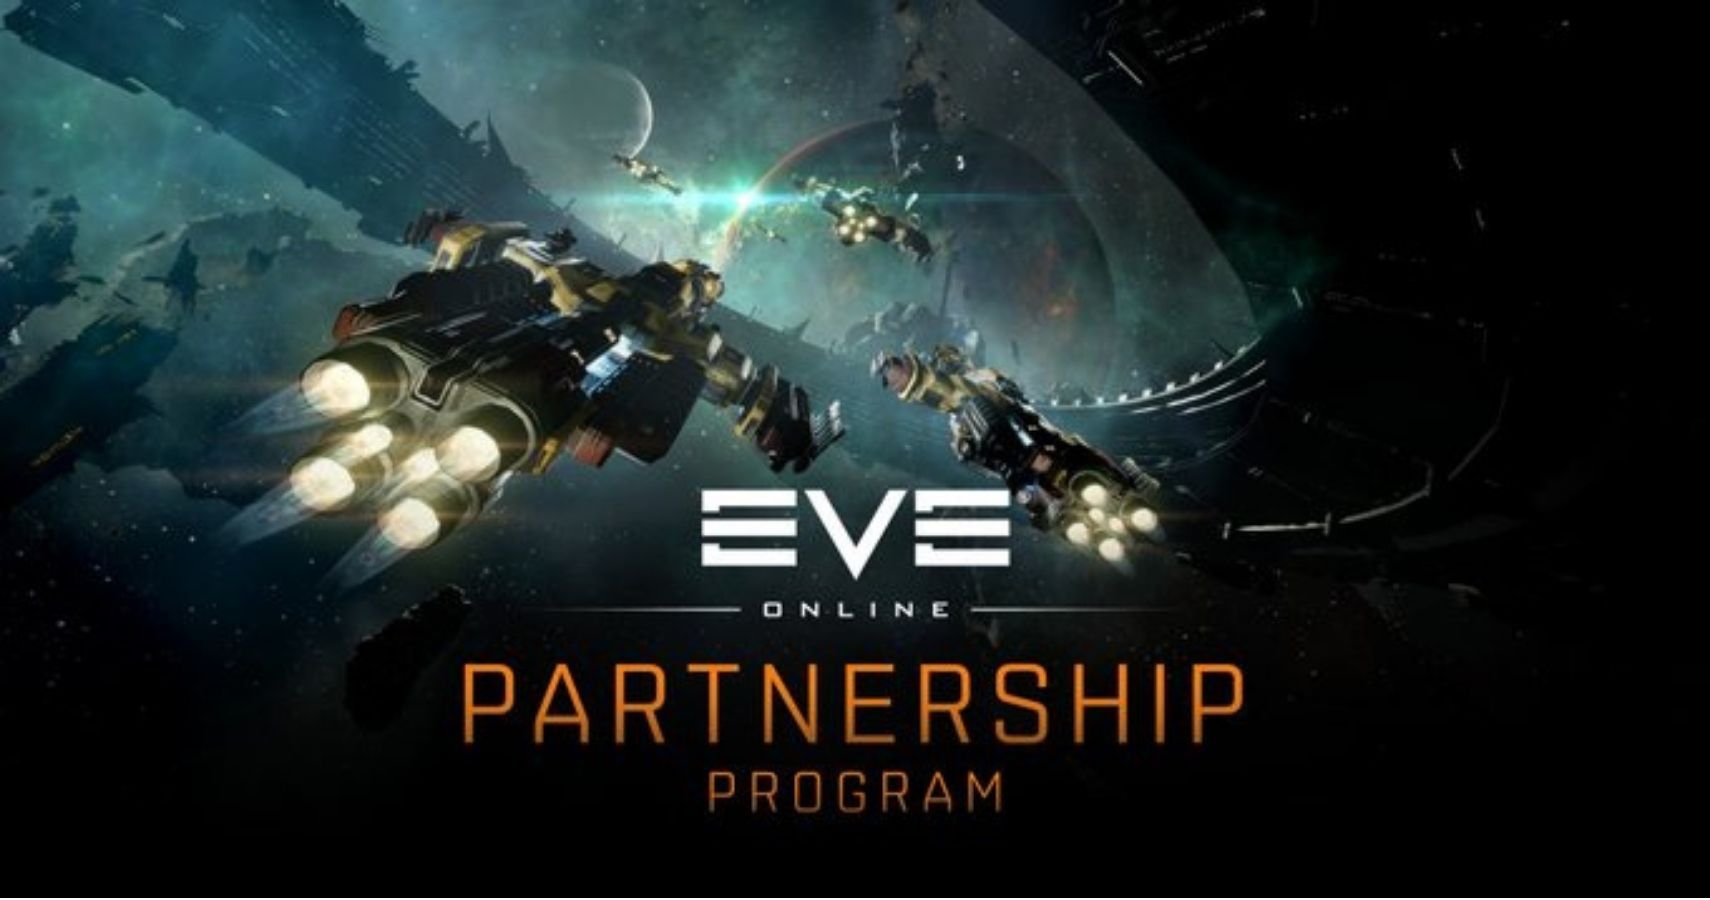 EVE Online Partnership Program Announcement feature image